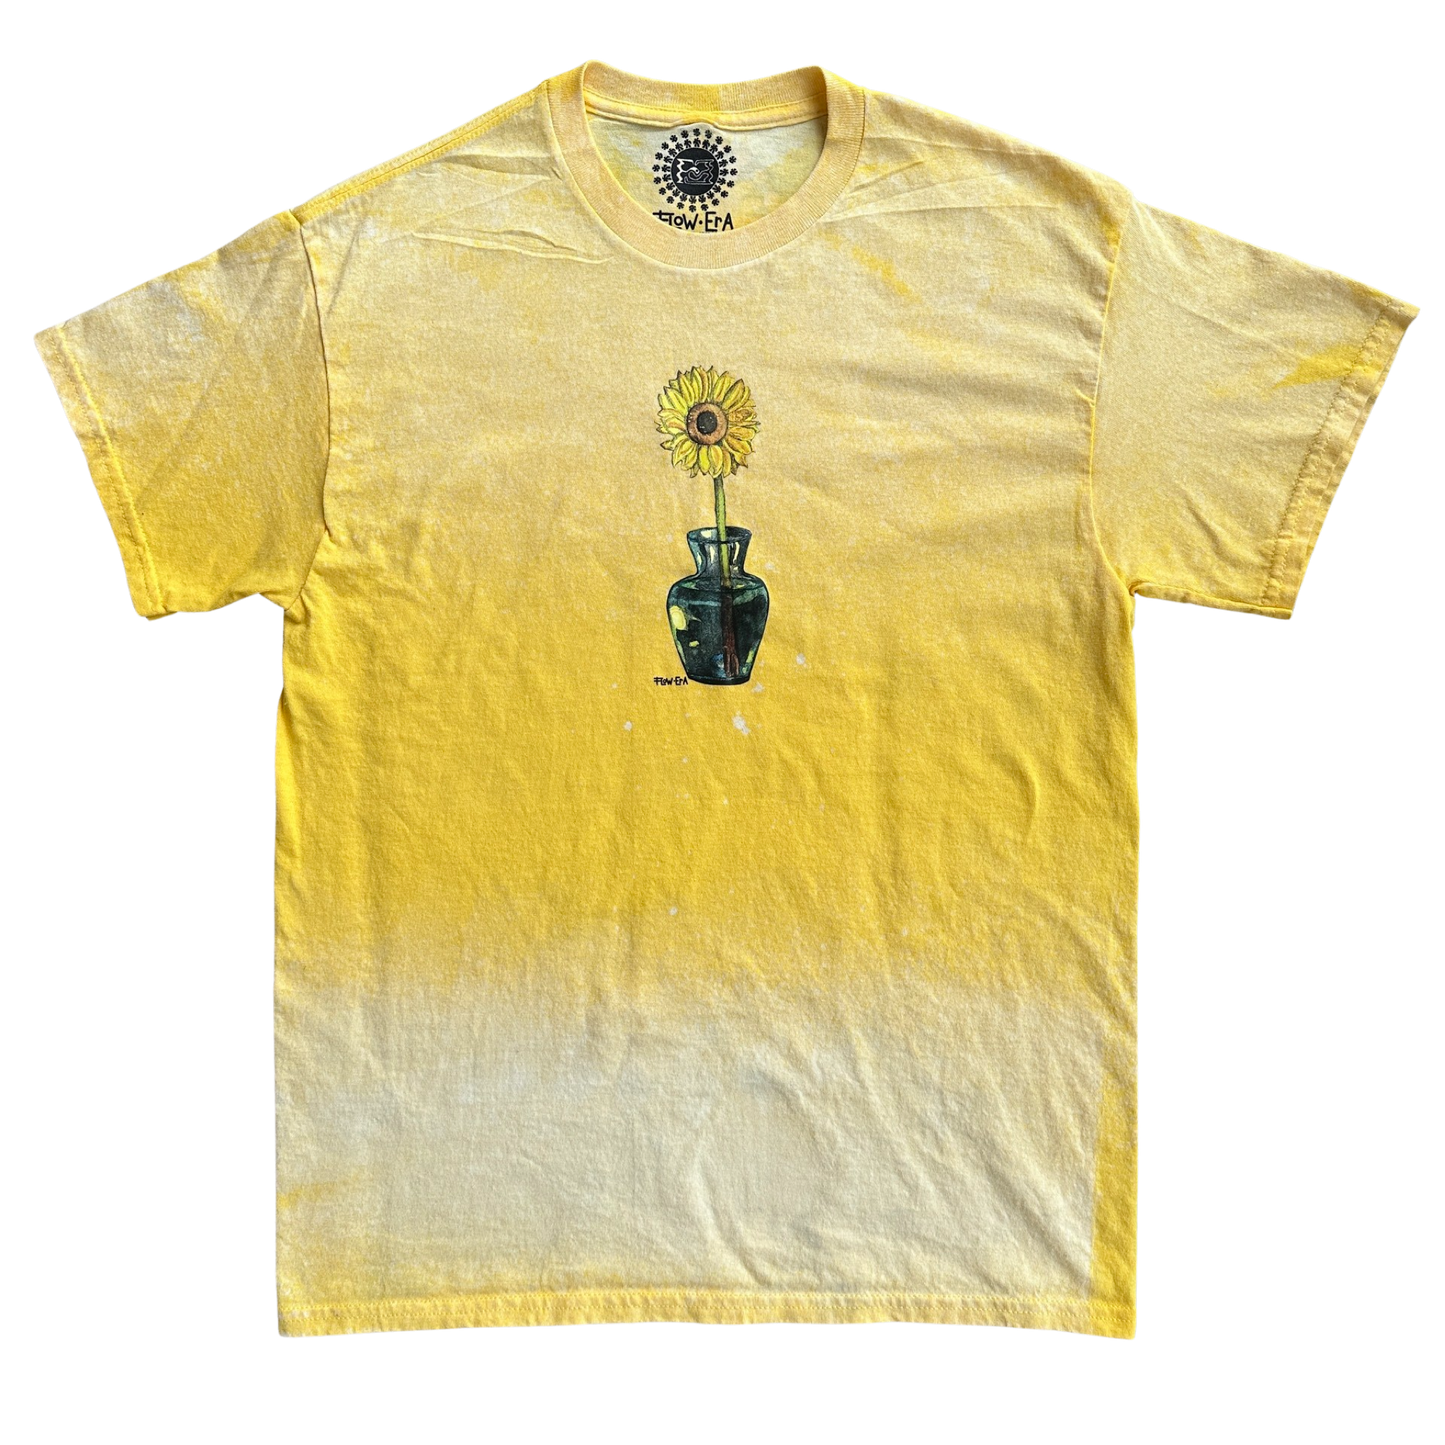 Sunflower Yellow Bleached Shirt